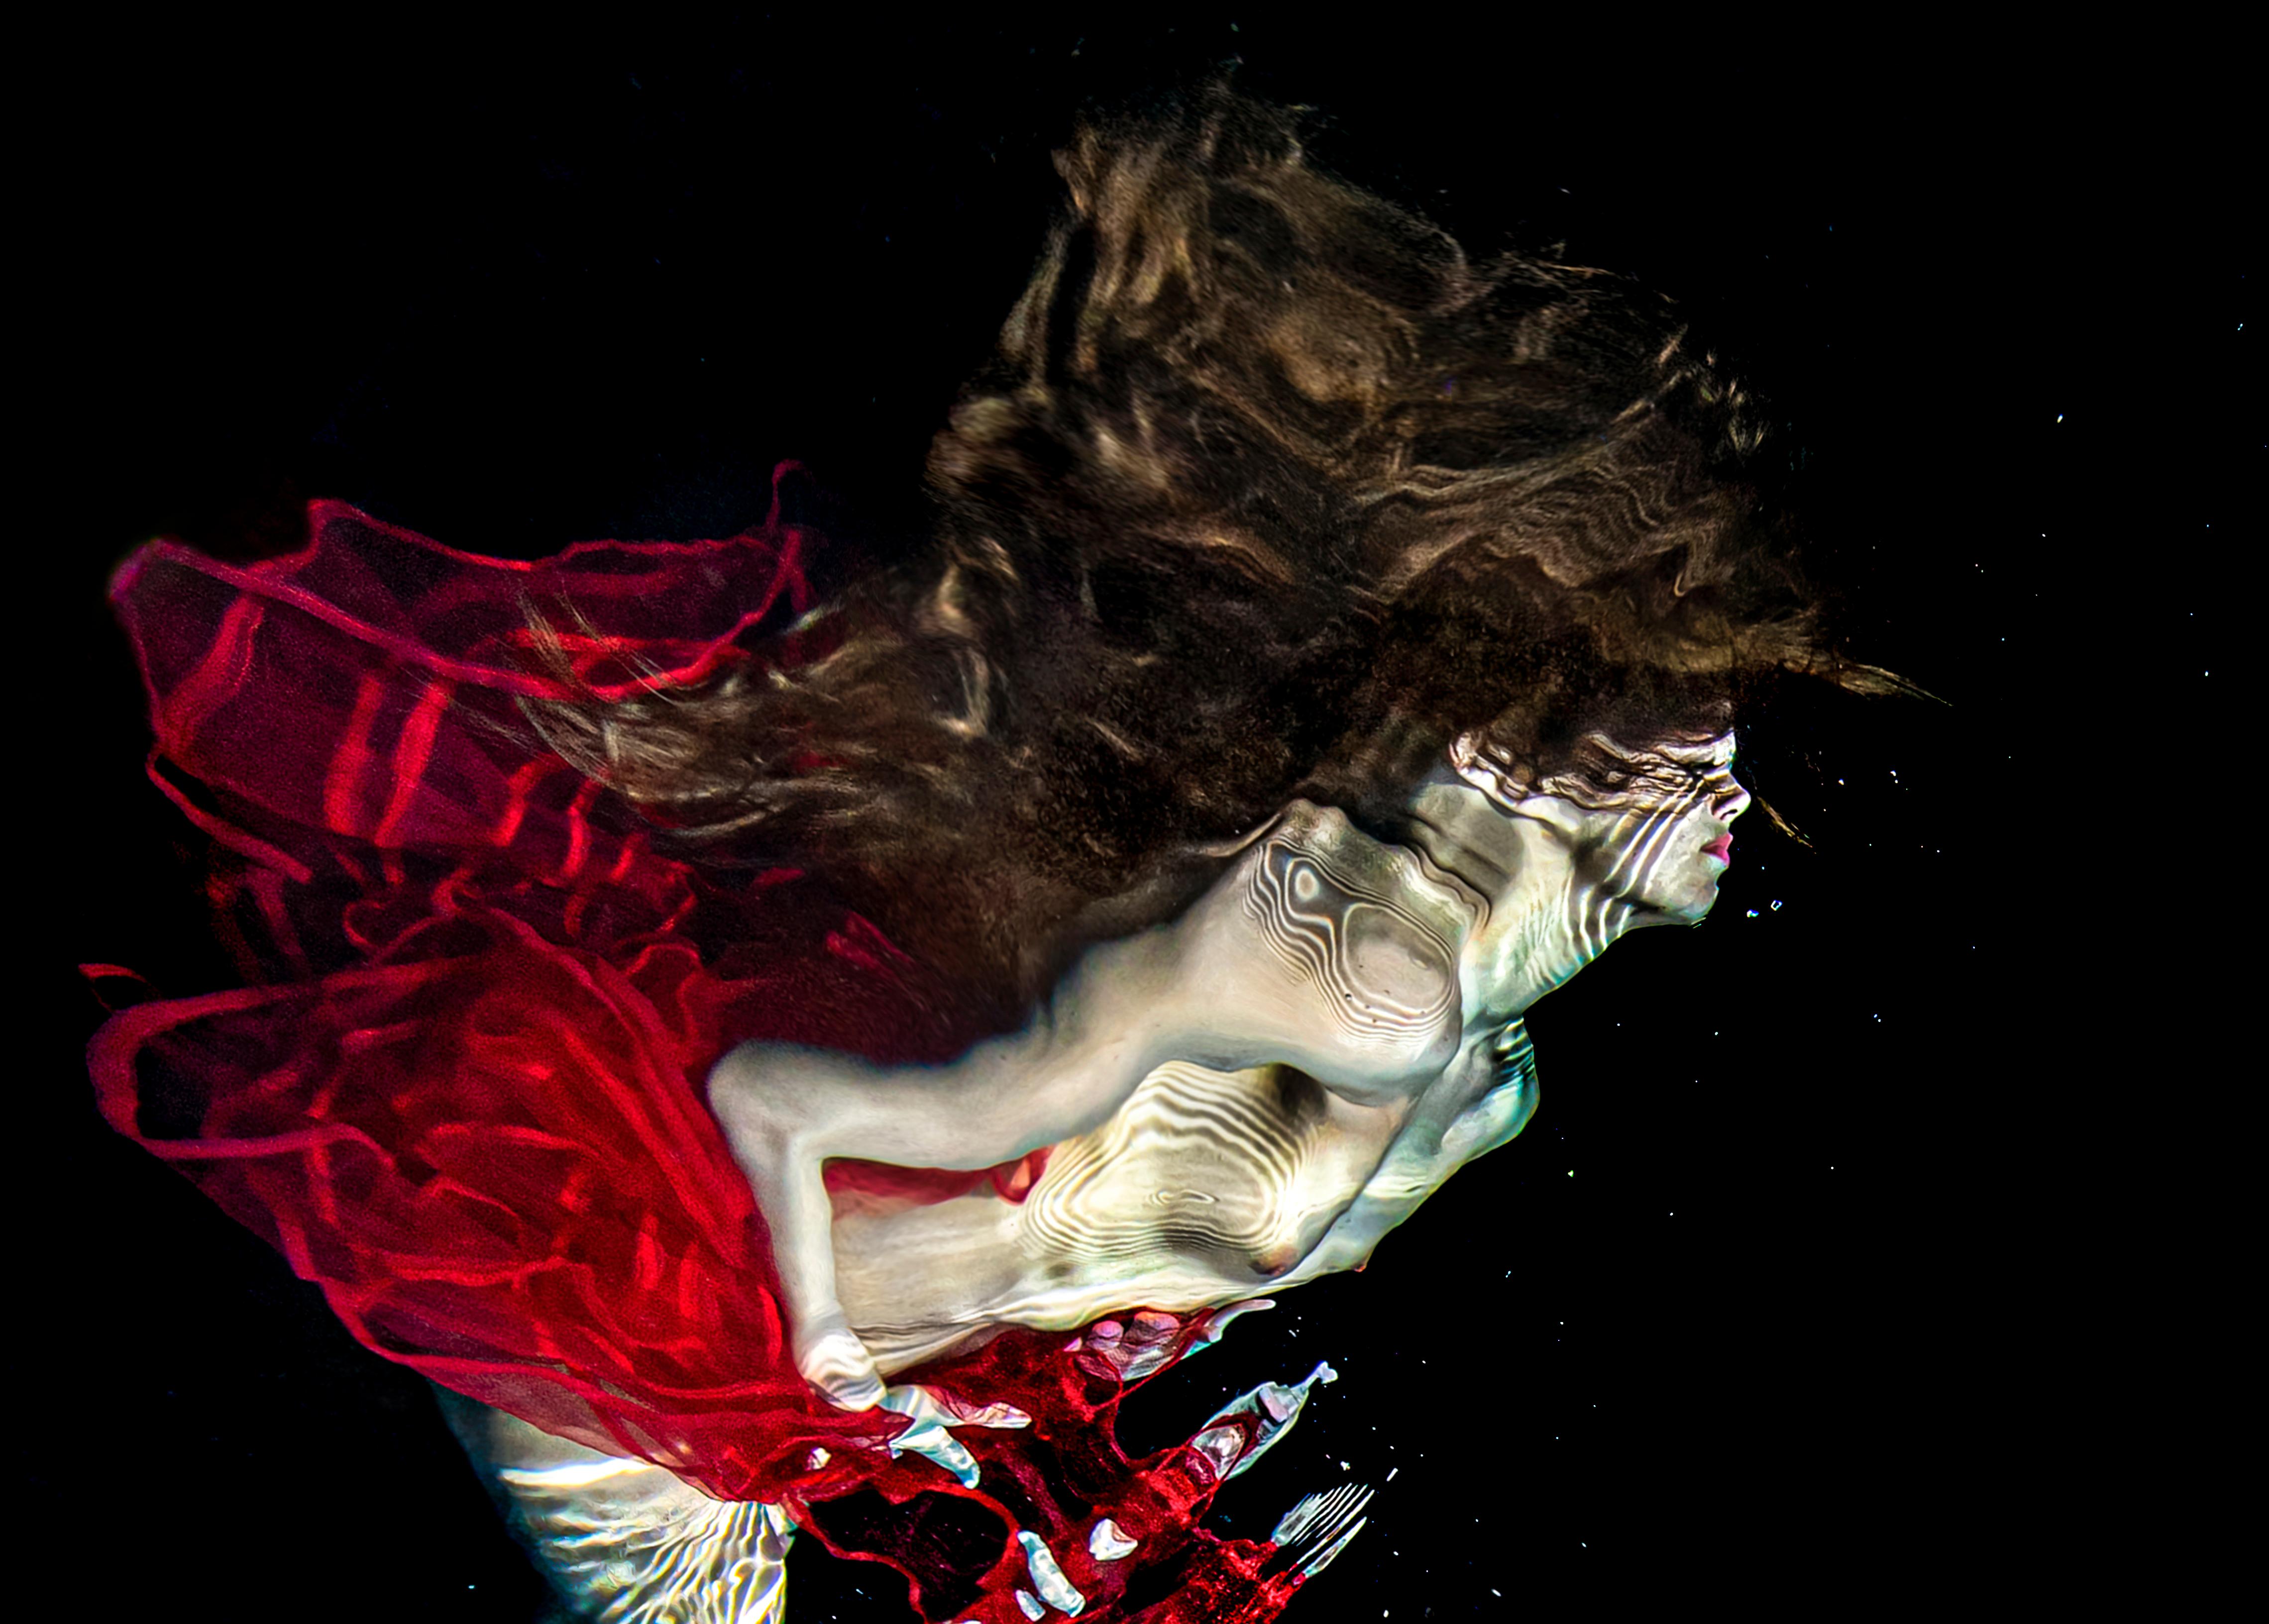 Salsa – Aktfotografie im Unterwasser – Serie REFLECTIONS – Pigment im Archiv 43x64 – Photograph von Alex Sher